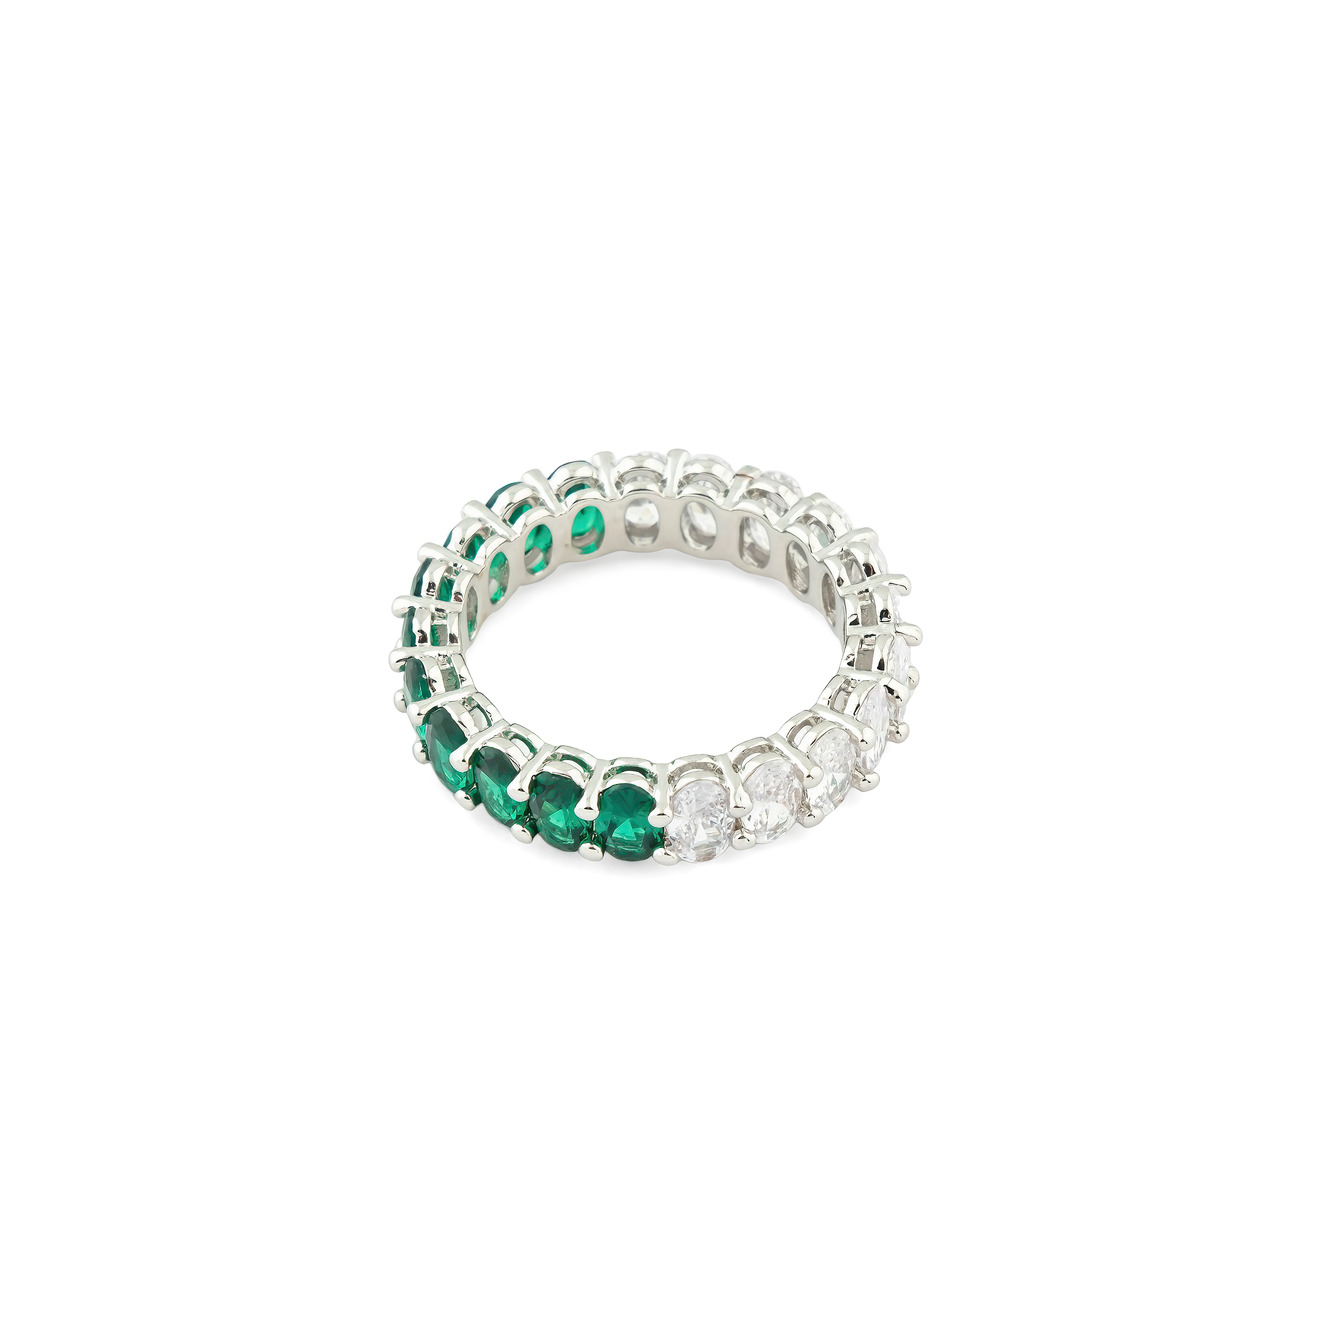 herald percy серебристое кольцо с паве из черных и белых кристаллов Herald Percy Серебристое кольцо с овалами белых и зеленых кристаллов